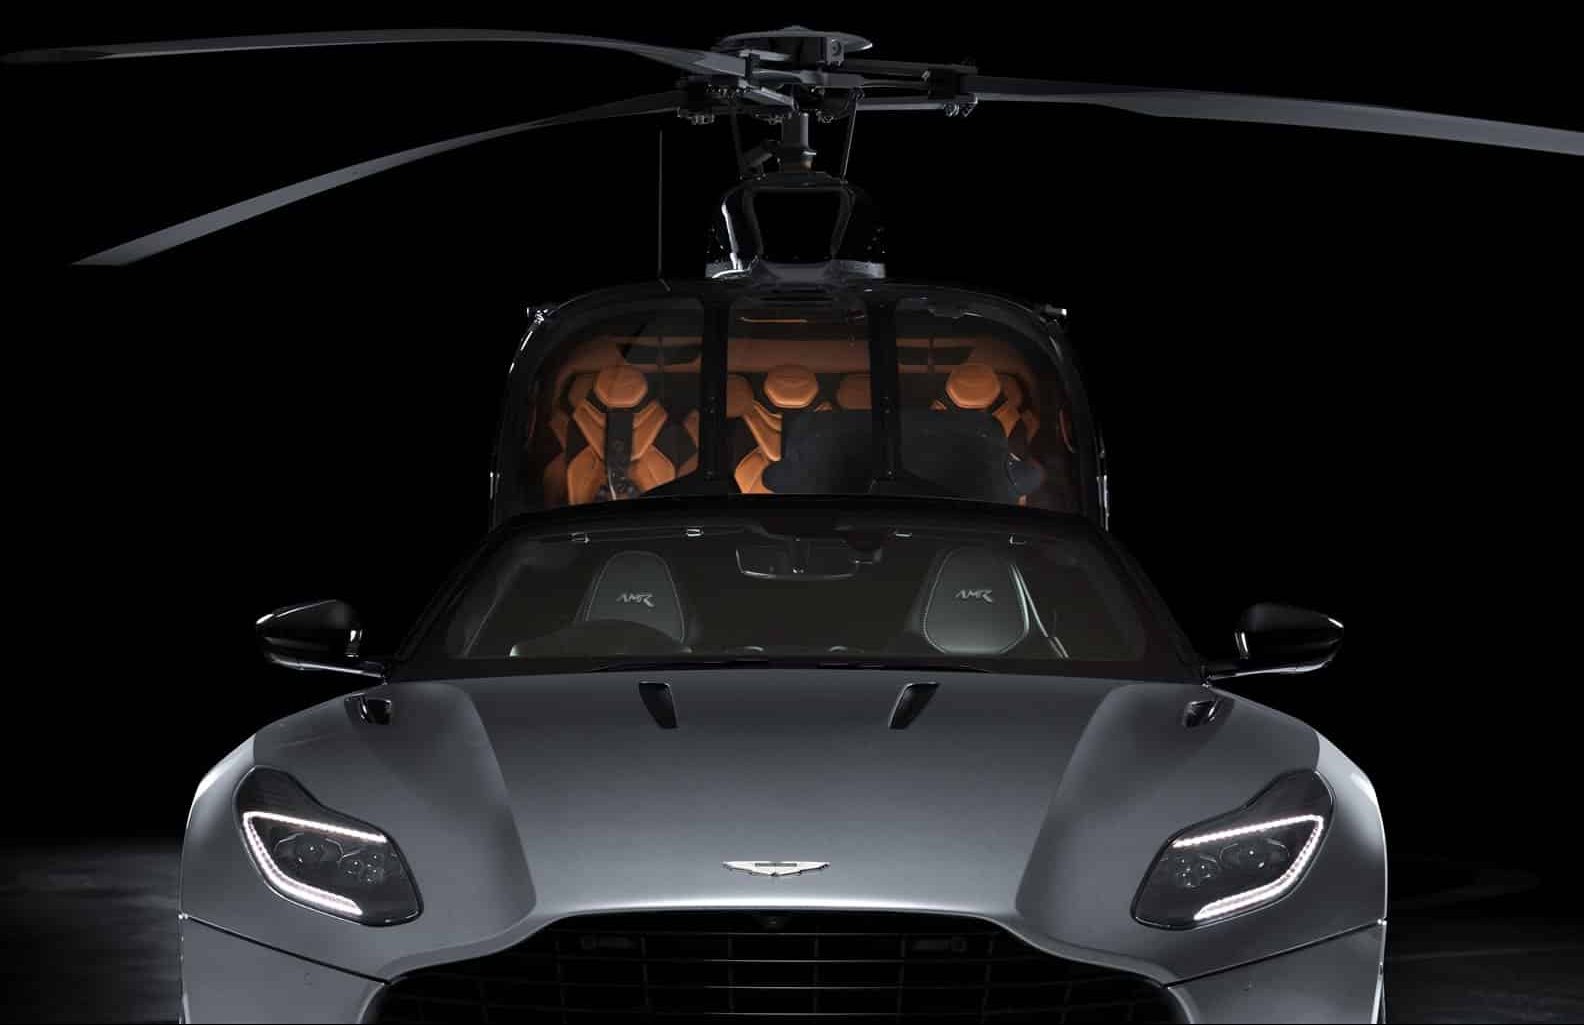 Helicóptero y Vehículo Aston Martin